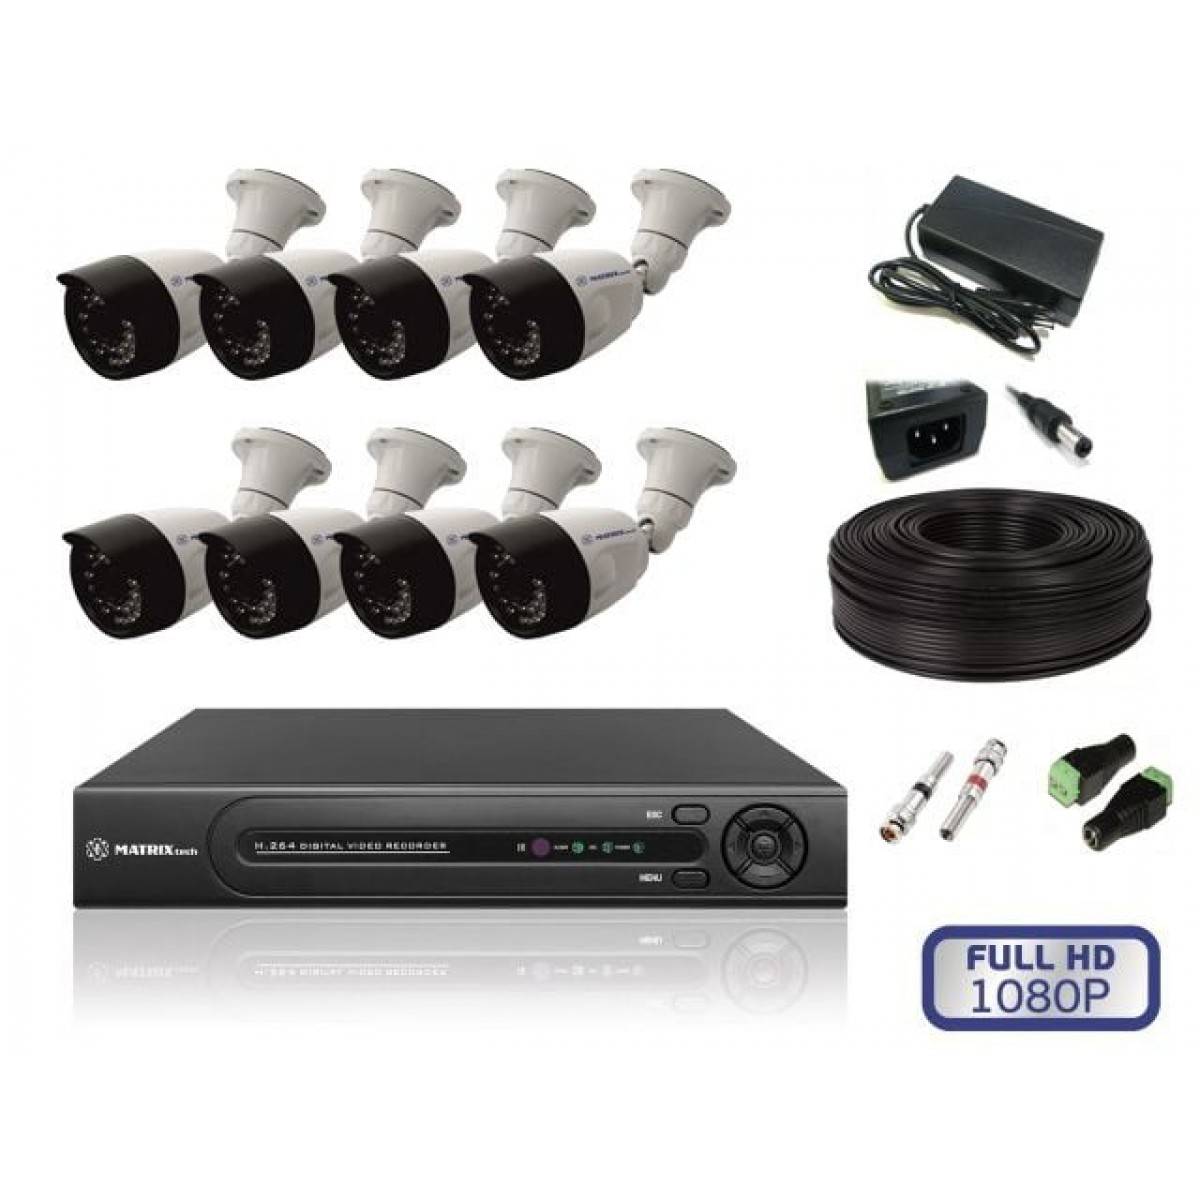 Купить видеонаблюдения для дома спб. Комплект видеонаблюдения Eseeco ahd4013 4 камеры. Комплект видеонаблюдения Hikvision на 8 камер. Комплект видеонаблюдения DVR 7204c1 с 4 видеокамерами. Комплект видеонаблюдения Hikvision на 4 камеры IP.